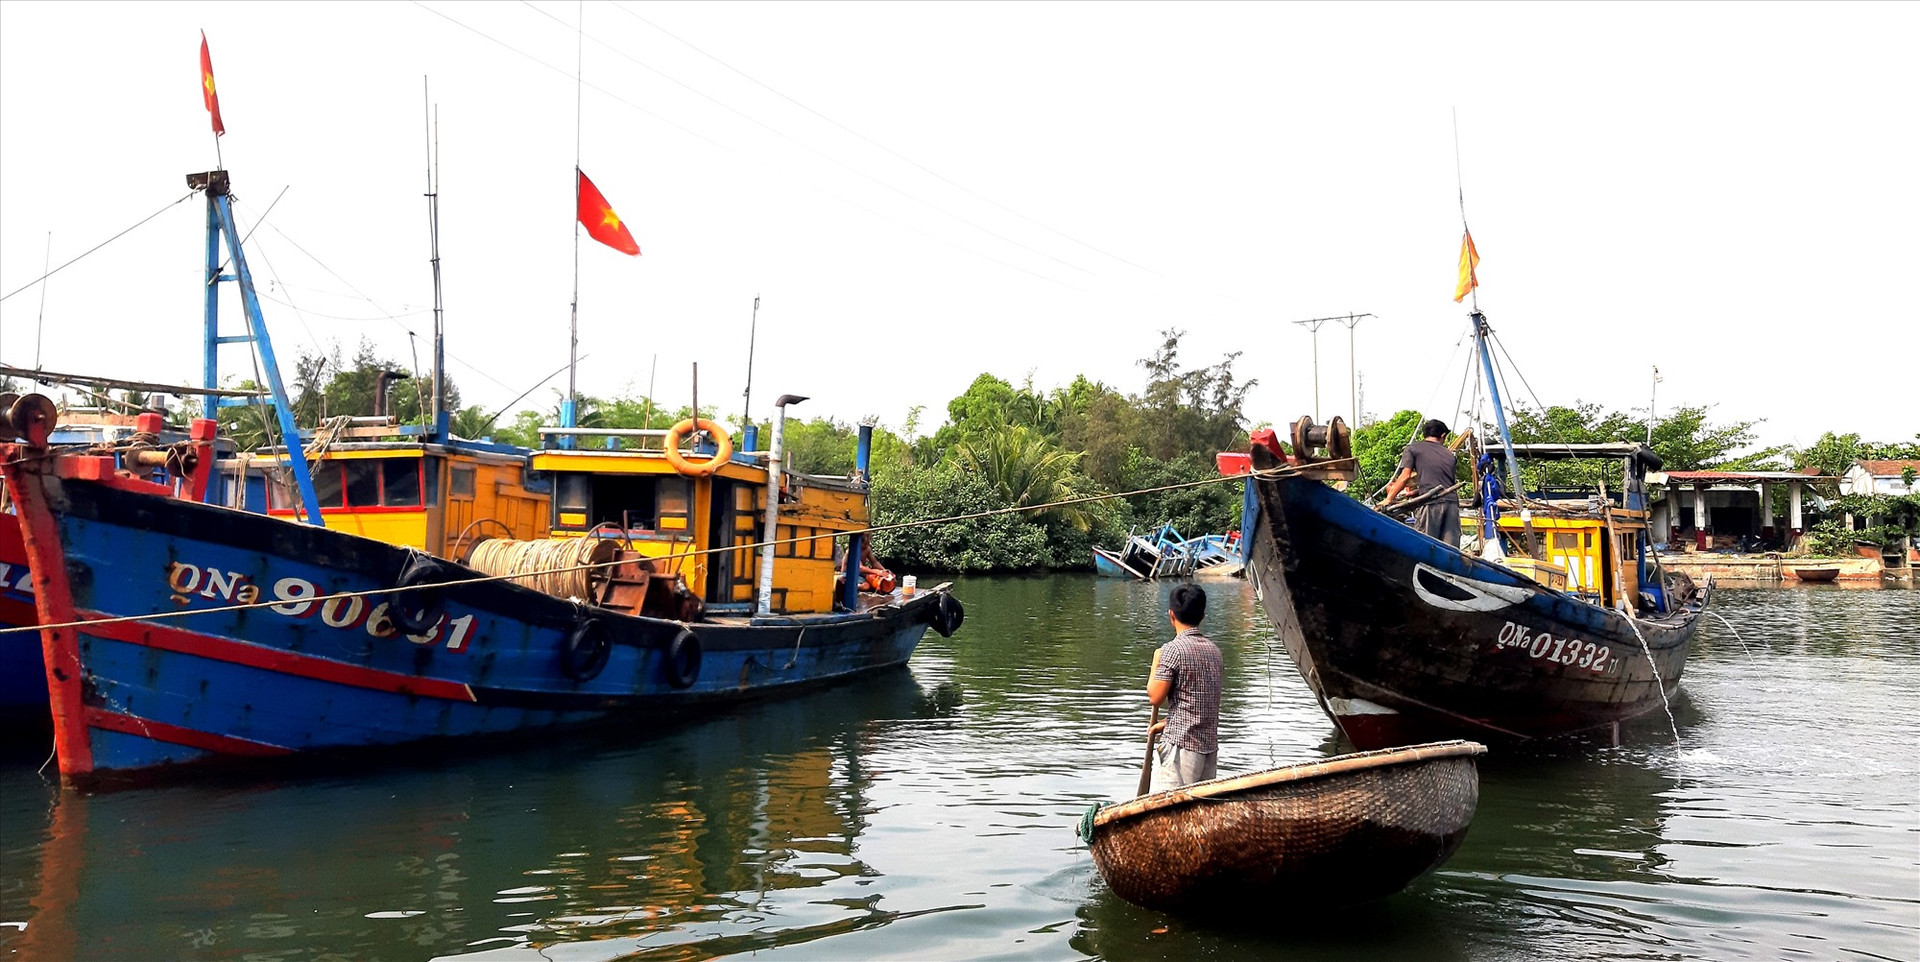 Quảng Nam và cả nước sẽ hạn chế nghề khai thác hải sản ven bờ với phương tiện nhỏ. Ảnh: VIỆT NGUYỄN